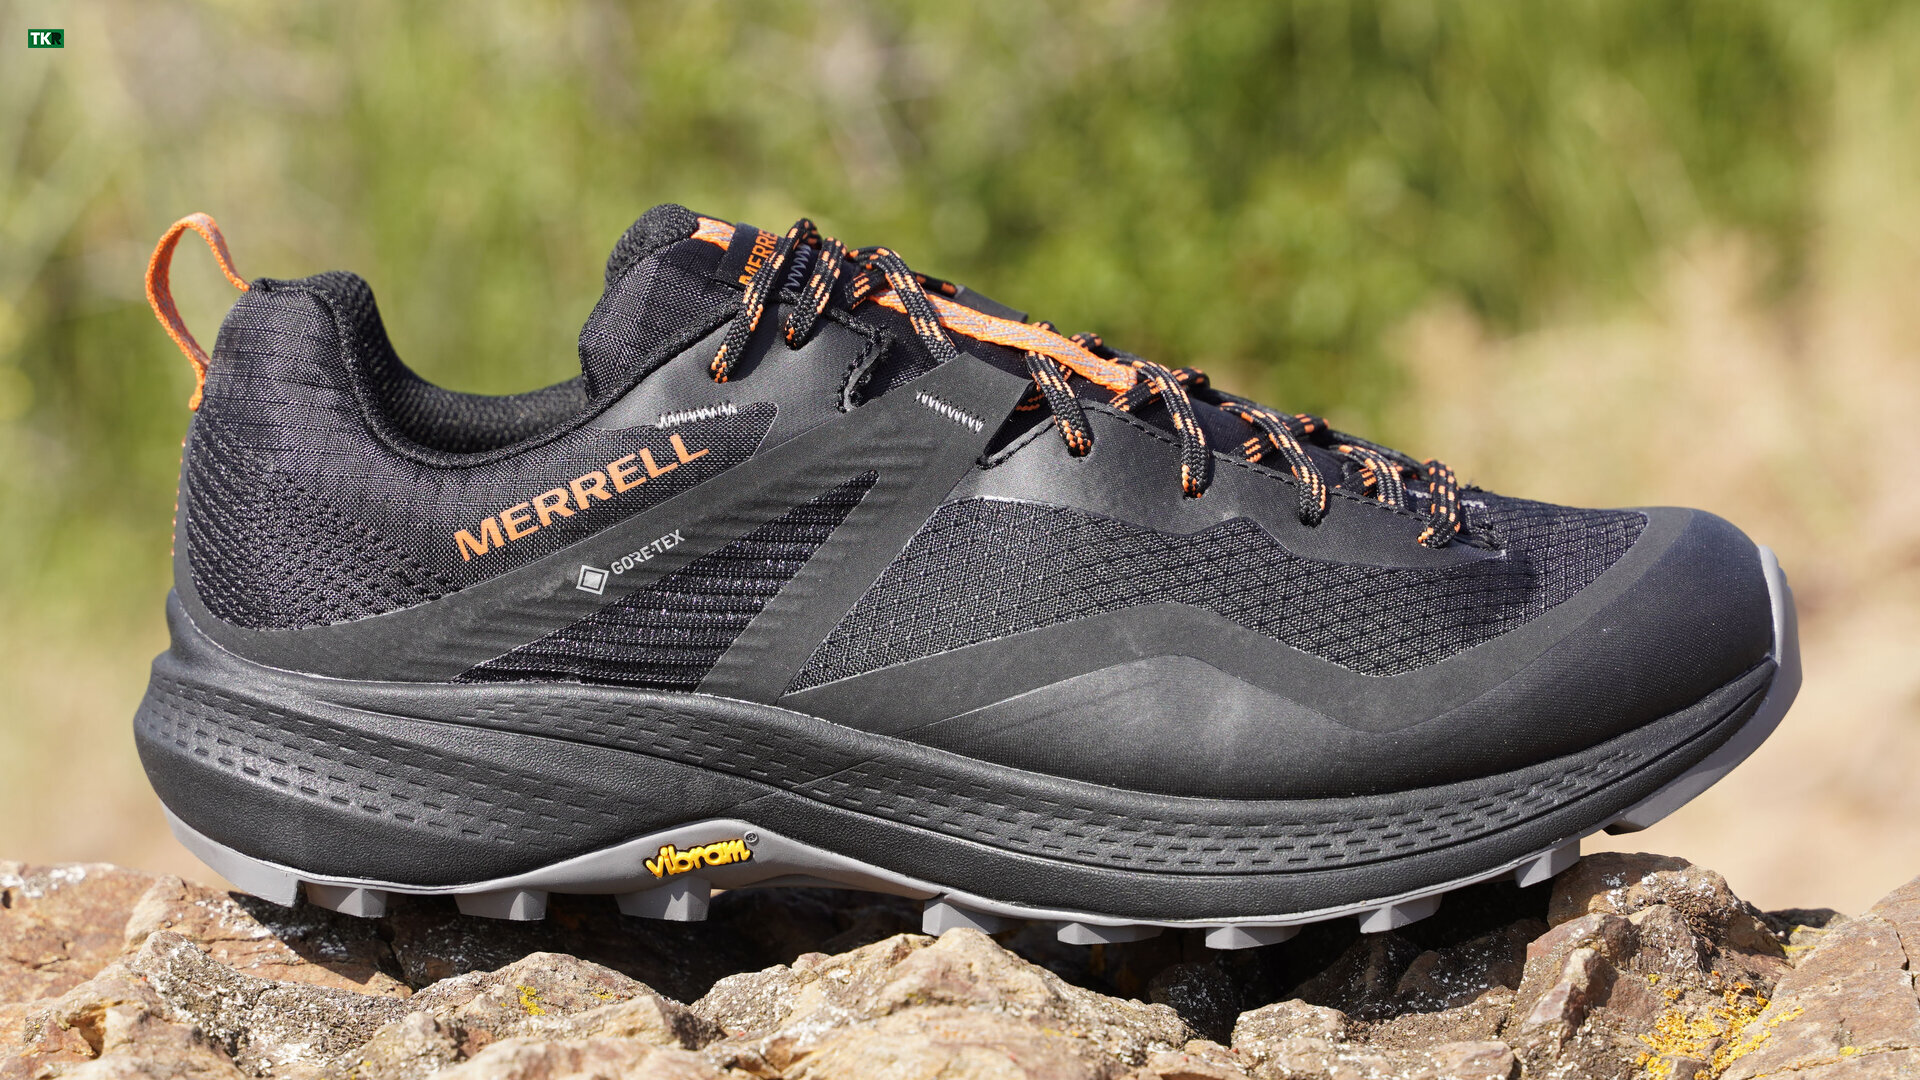 Las Merell MQM 3 Gore-Tex son unas zapatillas de Trekking ligeras y  resistentes ideales para caminar y correr